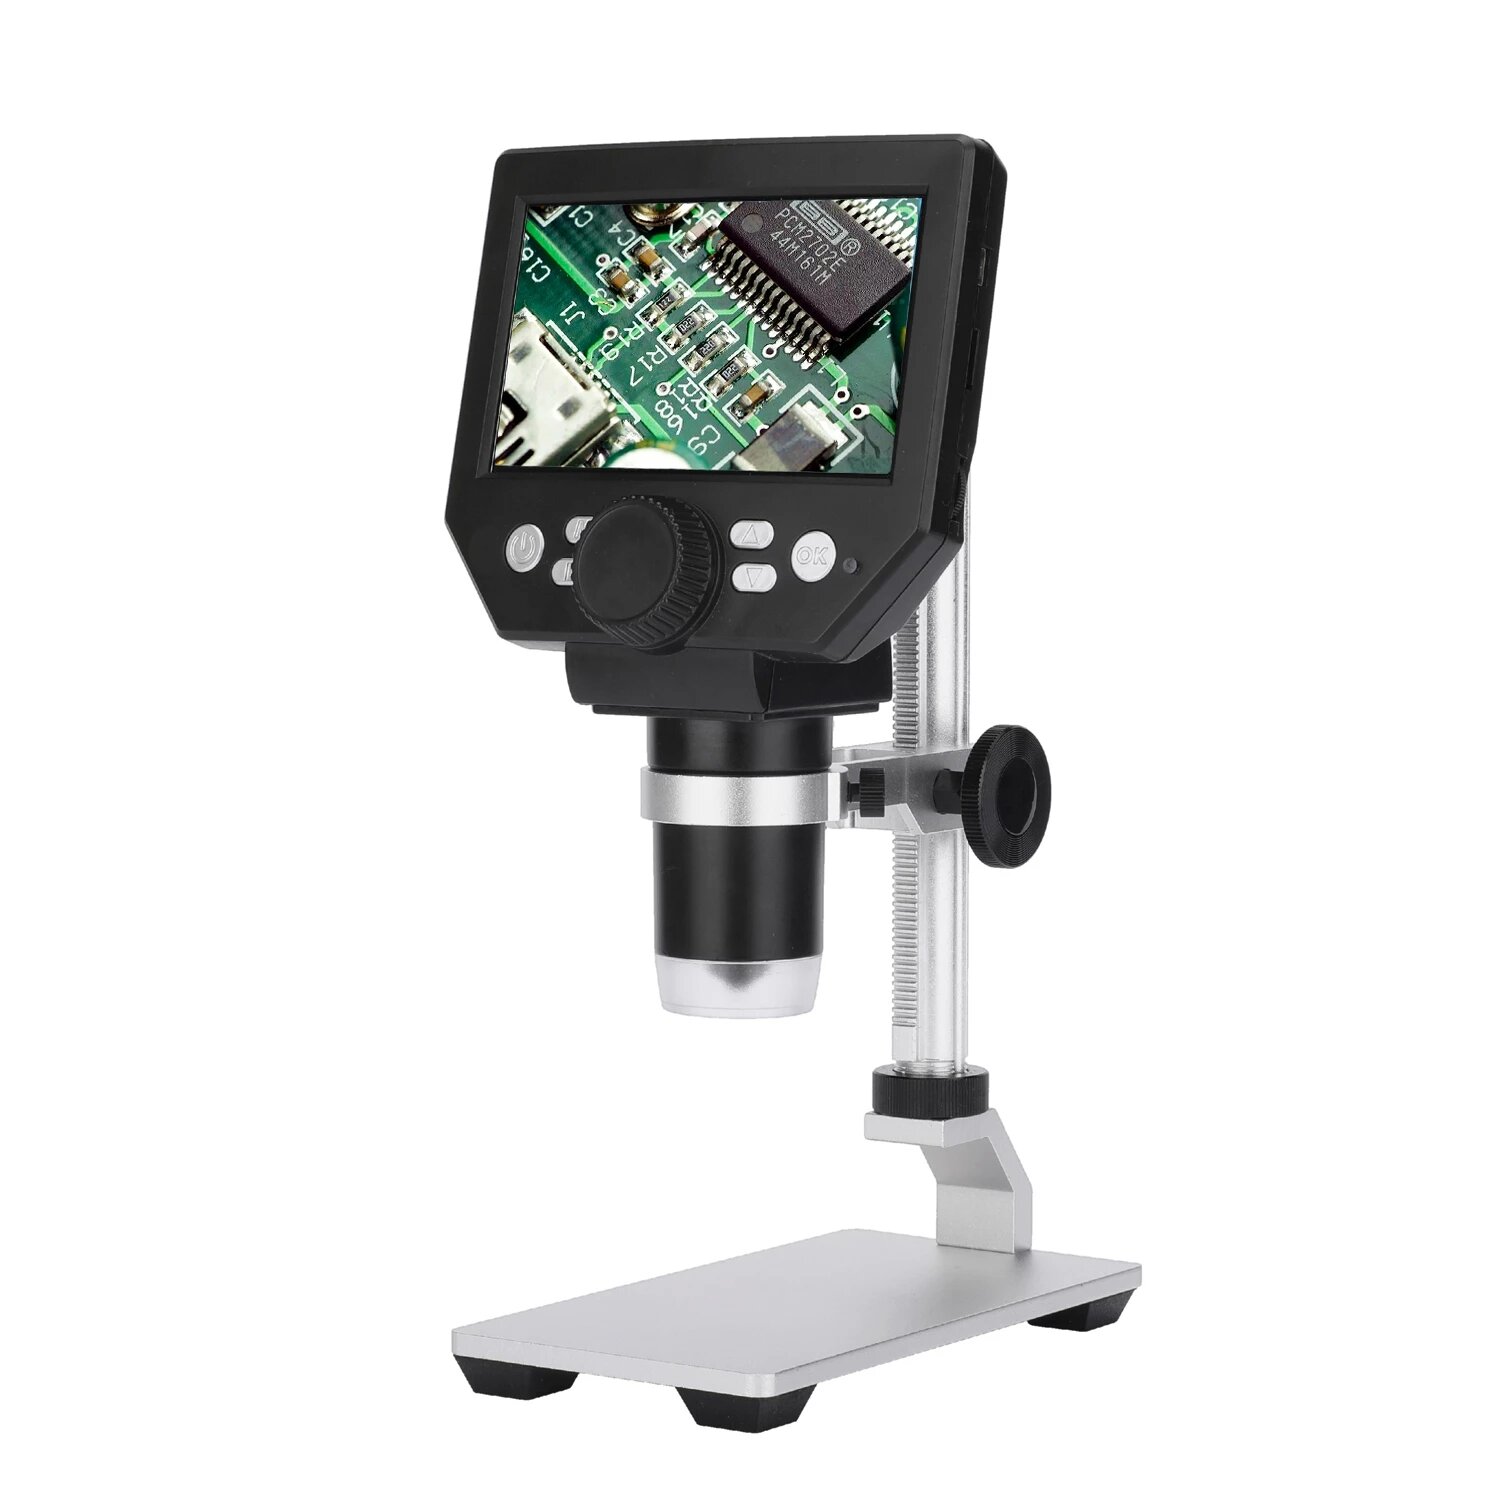 Mikroskop cyfrowy MUSTOOL G1000 z EU za $41.99 / ~160zł